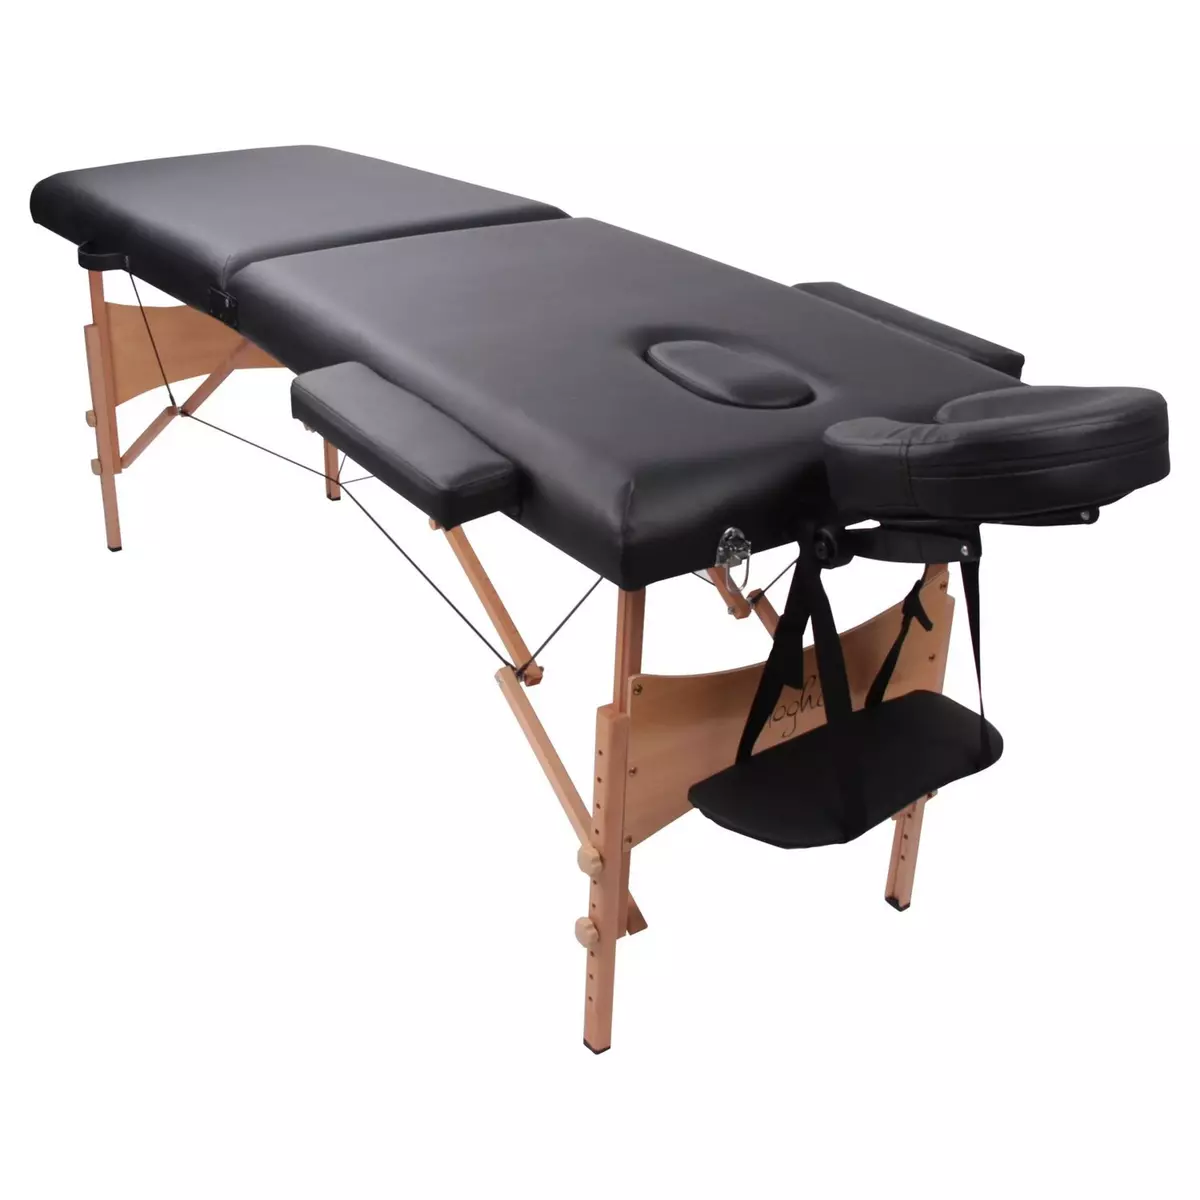 Protection pour table de massage et kinésithérapie 75 x 200